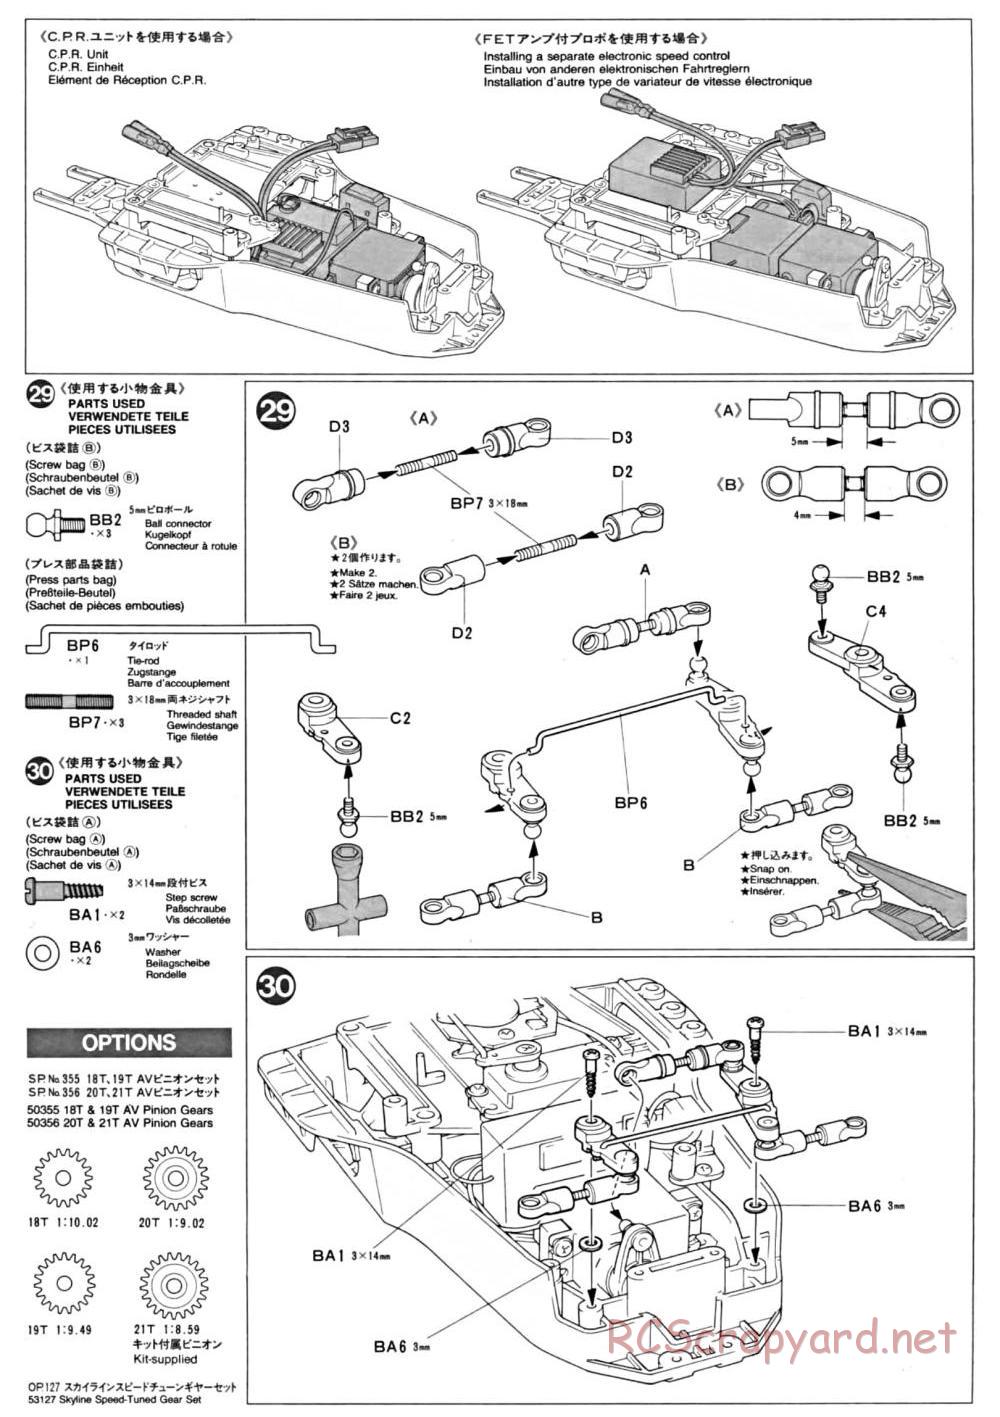 Tamiya - TA-01 Chassis - Manual - Page 11